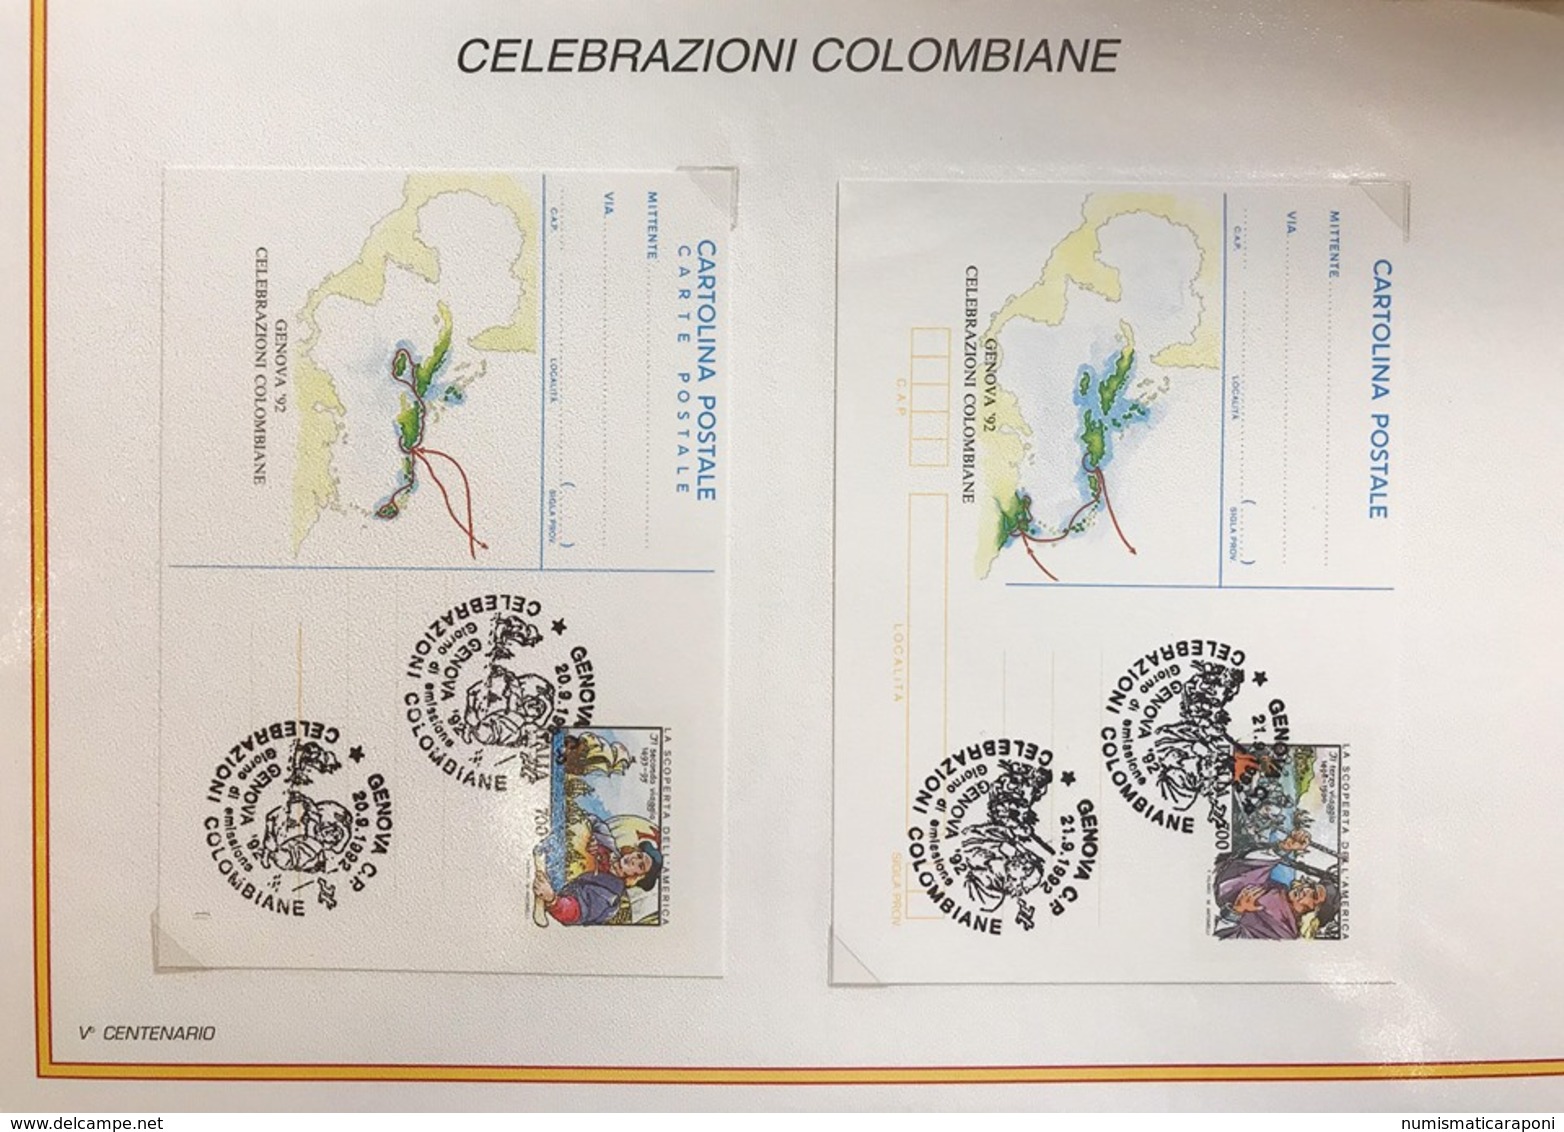 5° centenario della scoperta dell'America 1492-1992 celebrazioni colombiane italia usa spagna portogallo 41 es.